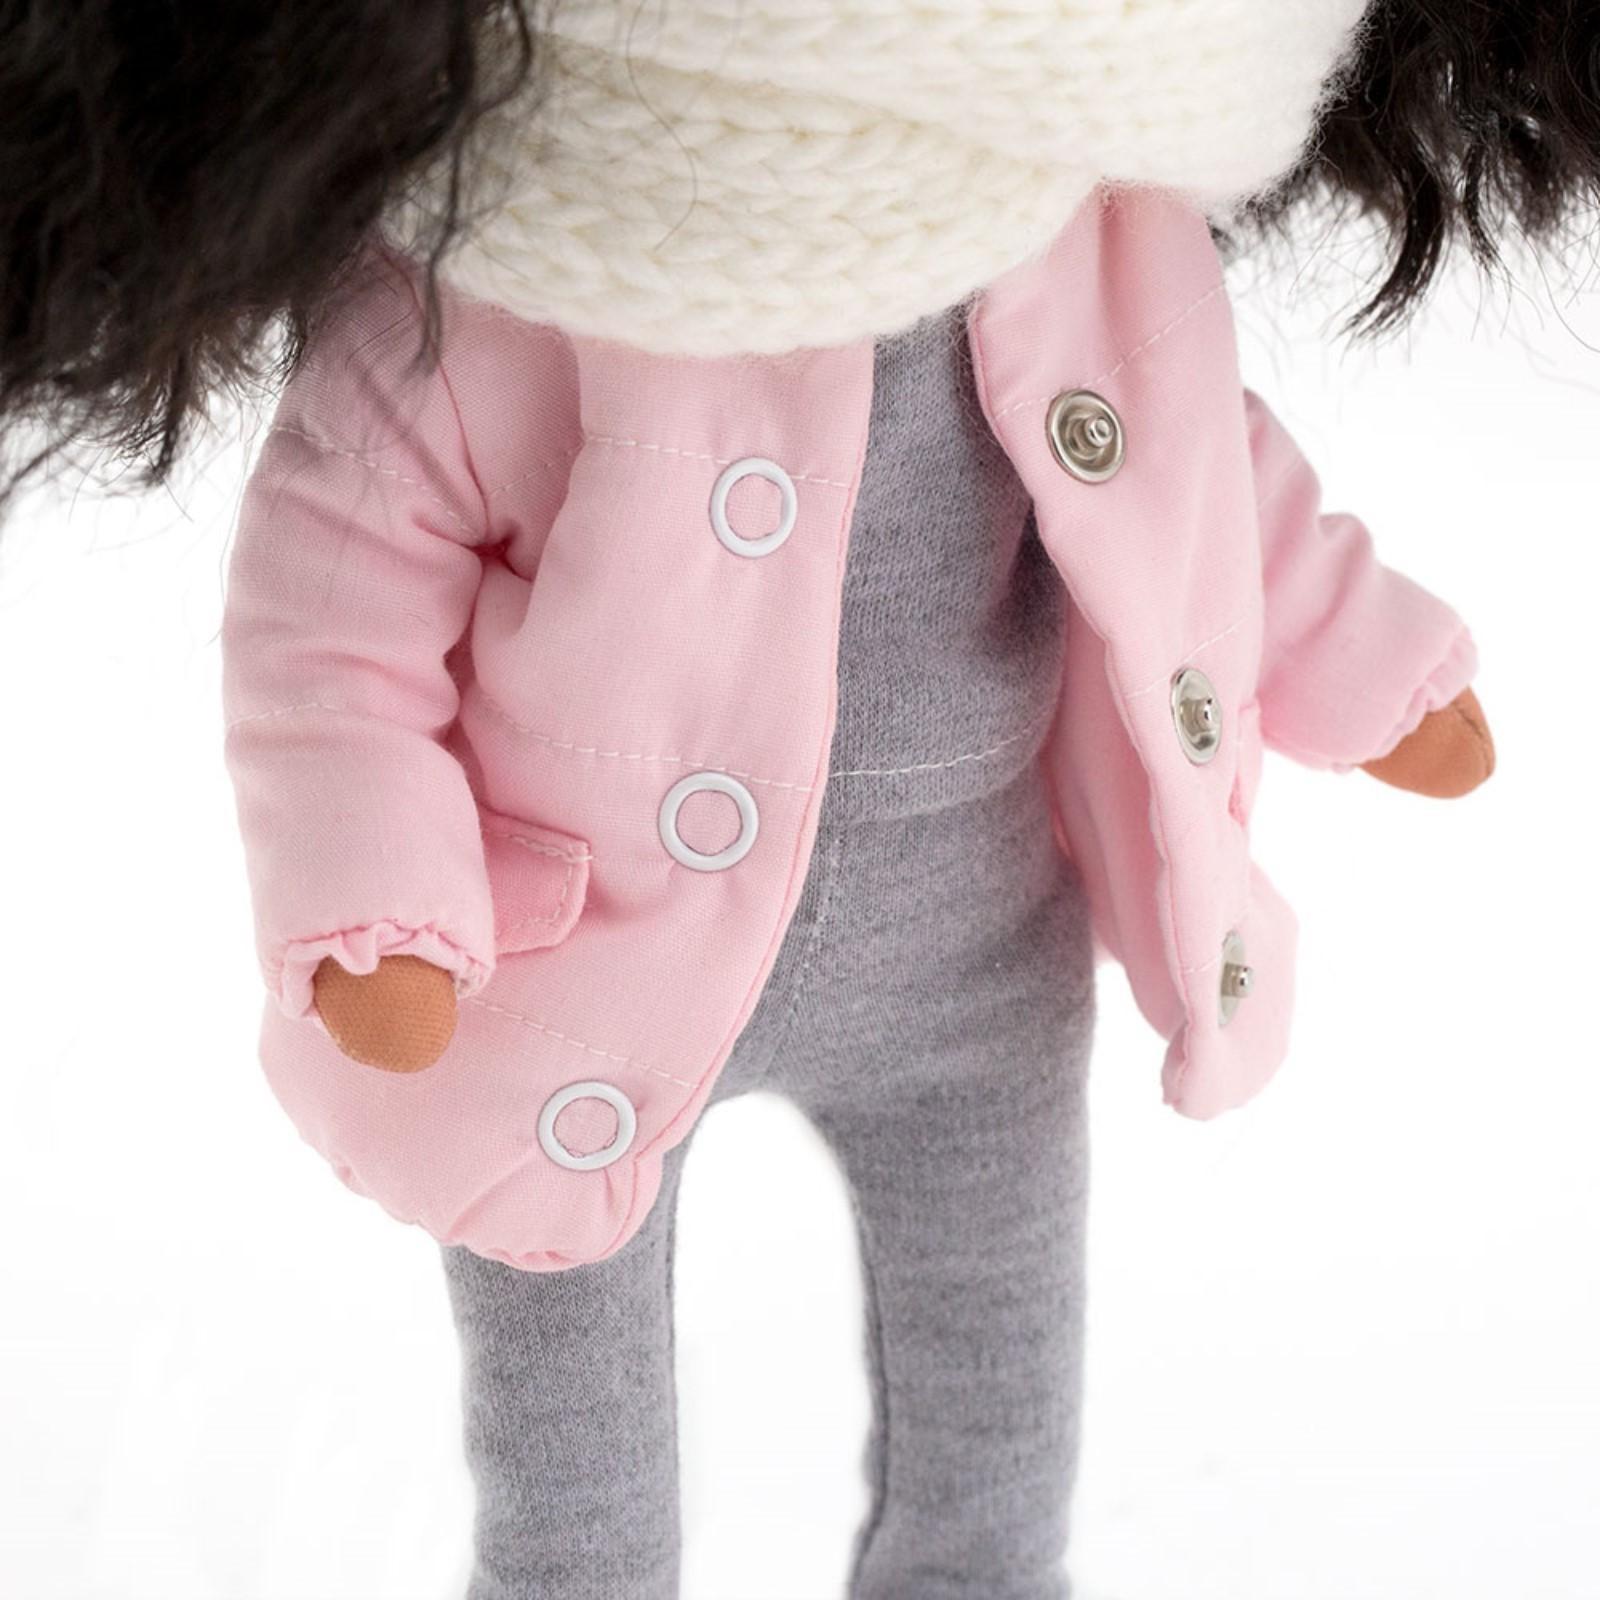 Мягкая кукла «Tina в розовой куртке», 32 см